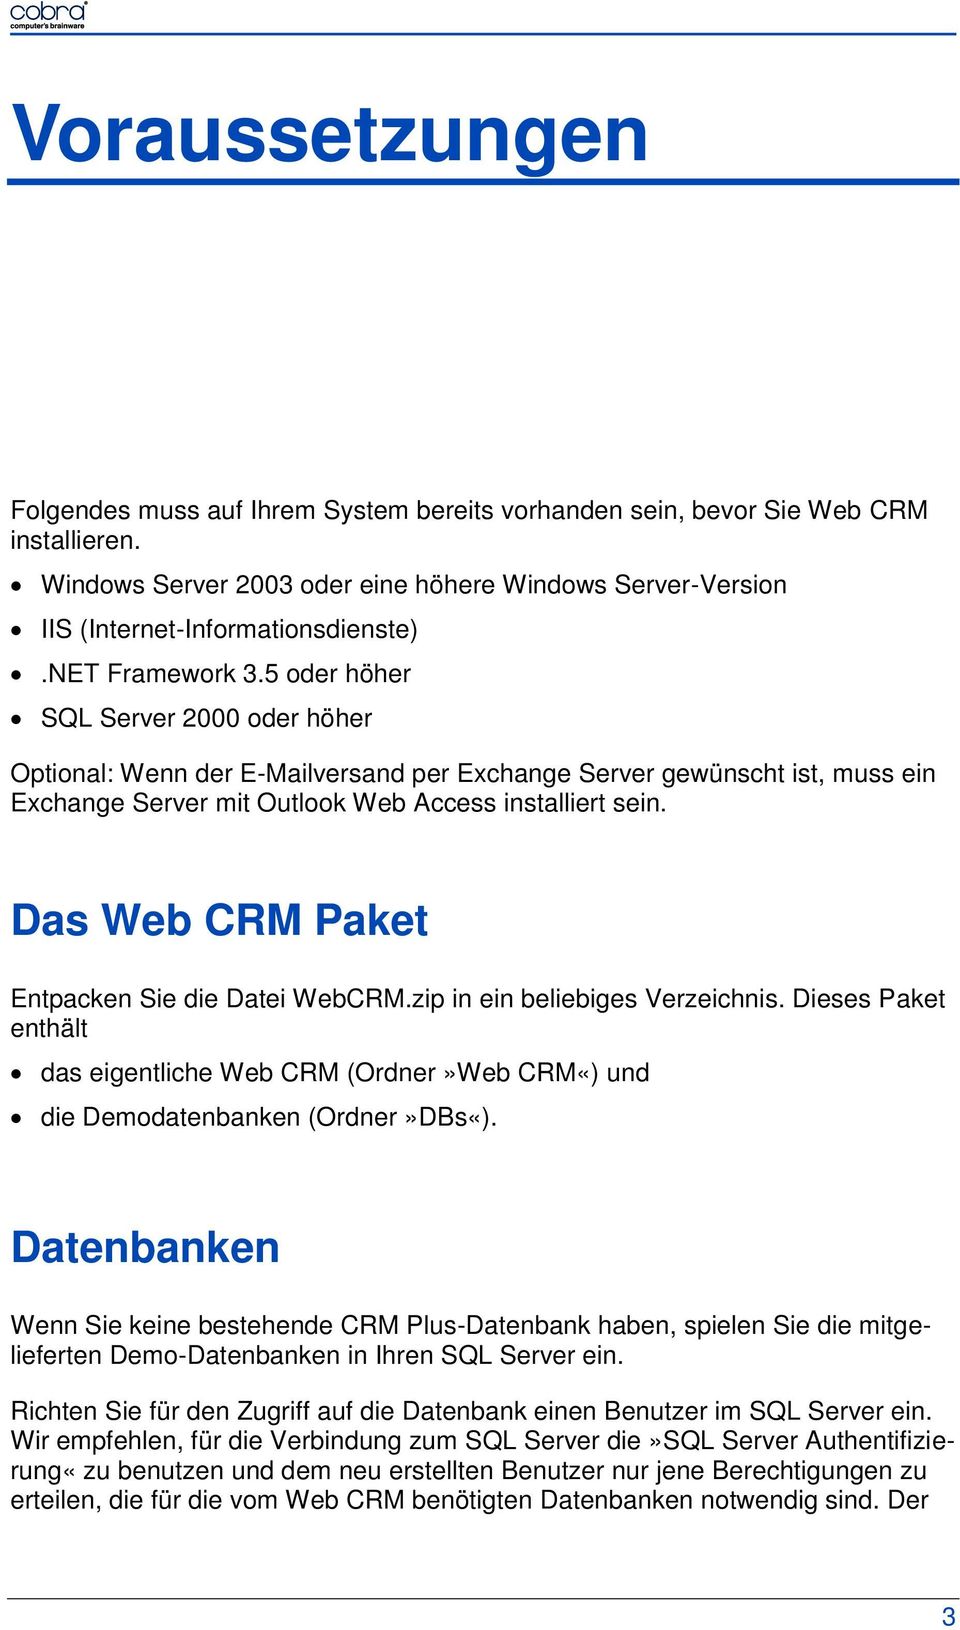 Das Web CRM Paket Entpacken Sie die Datei WebCRM.zip in ein beliebiges Verzeichnis. Dieses Paket enthält das eigentliche Web CRM (Ordner»Web CRM«) und die Demodatenbanken (Ordner»DBs«).